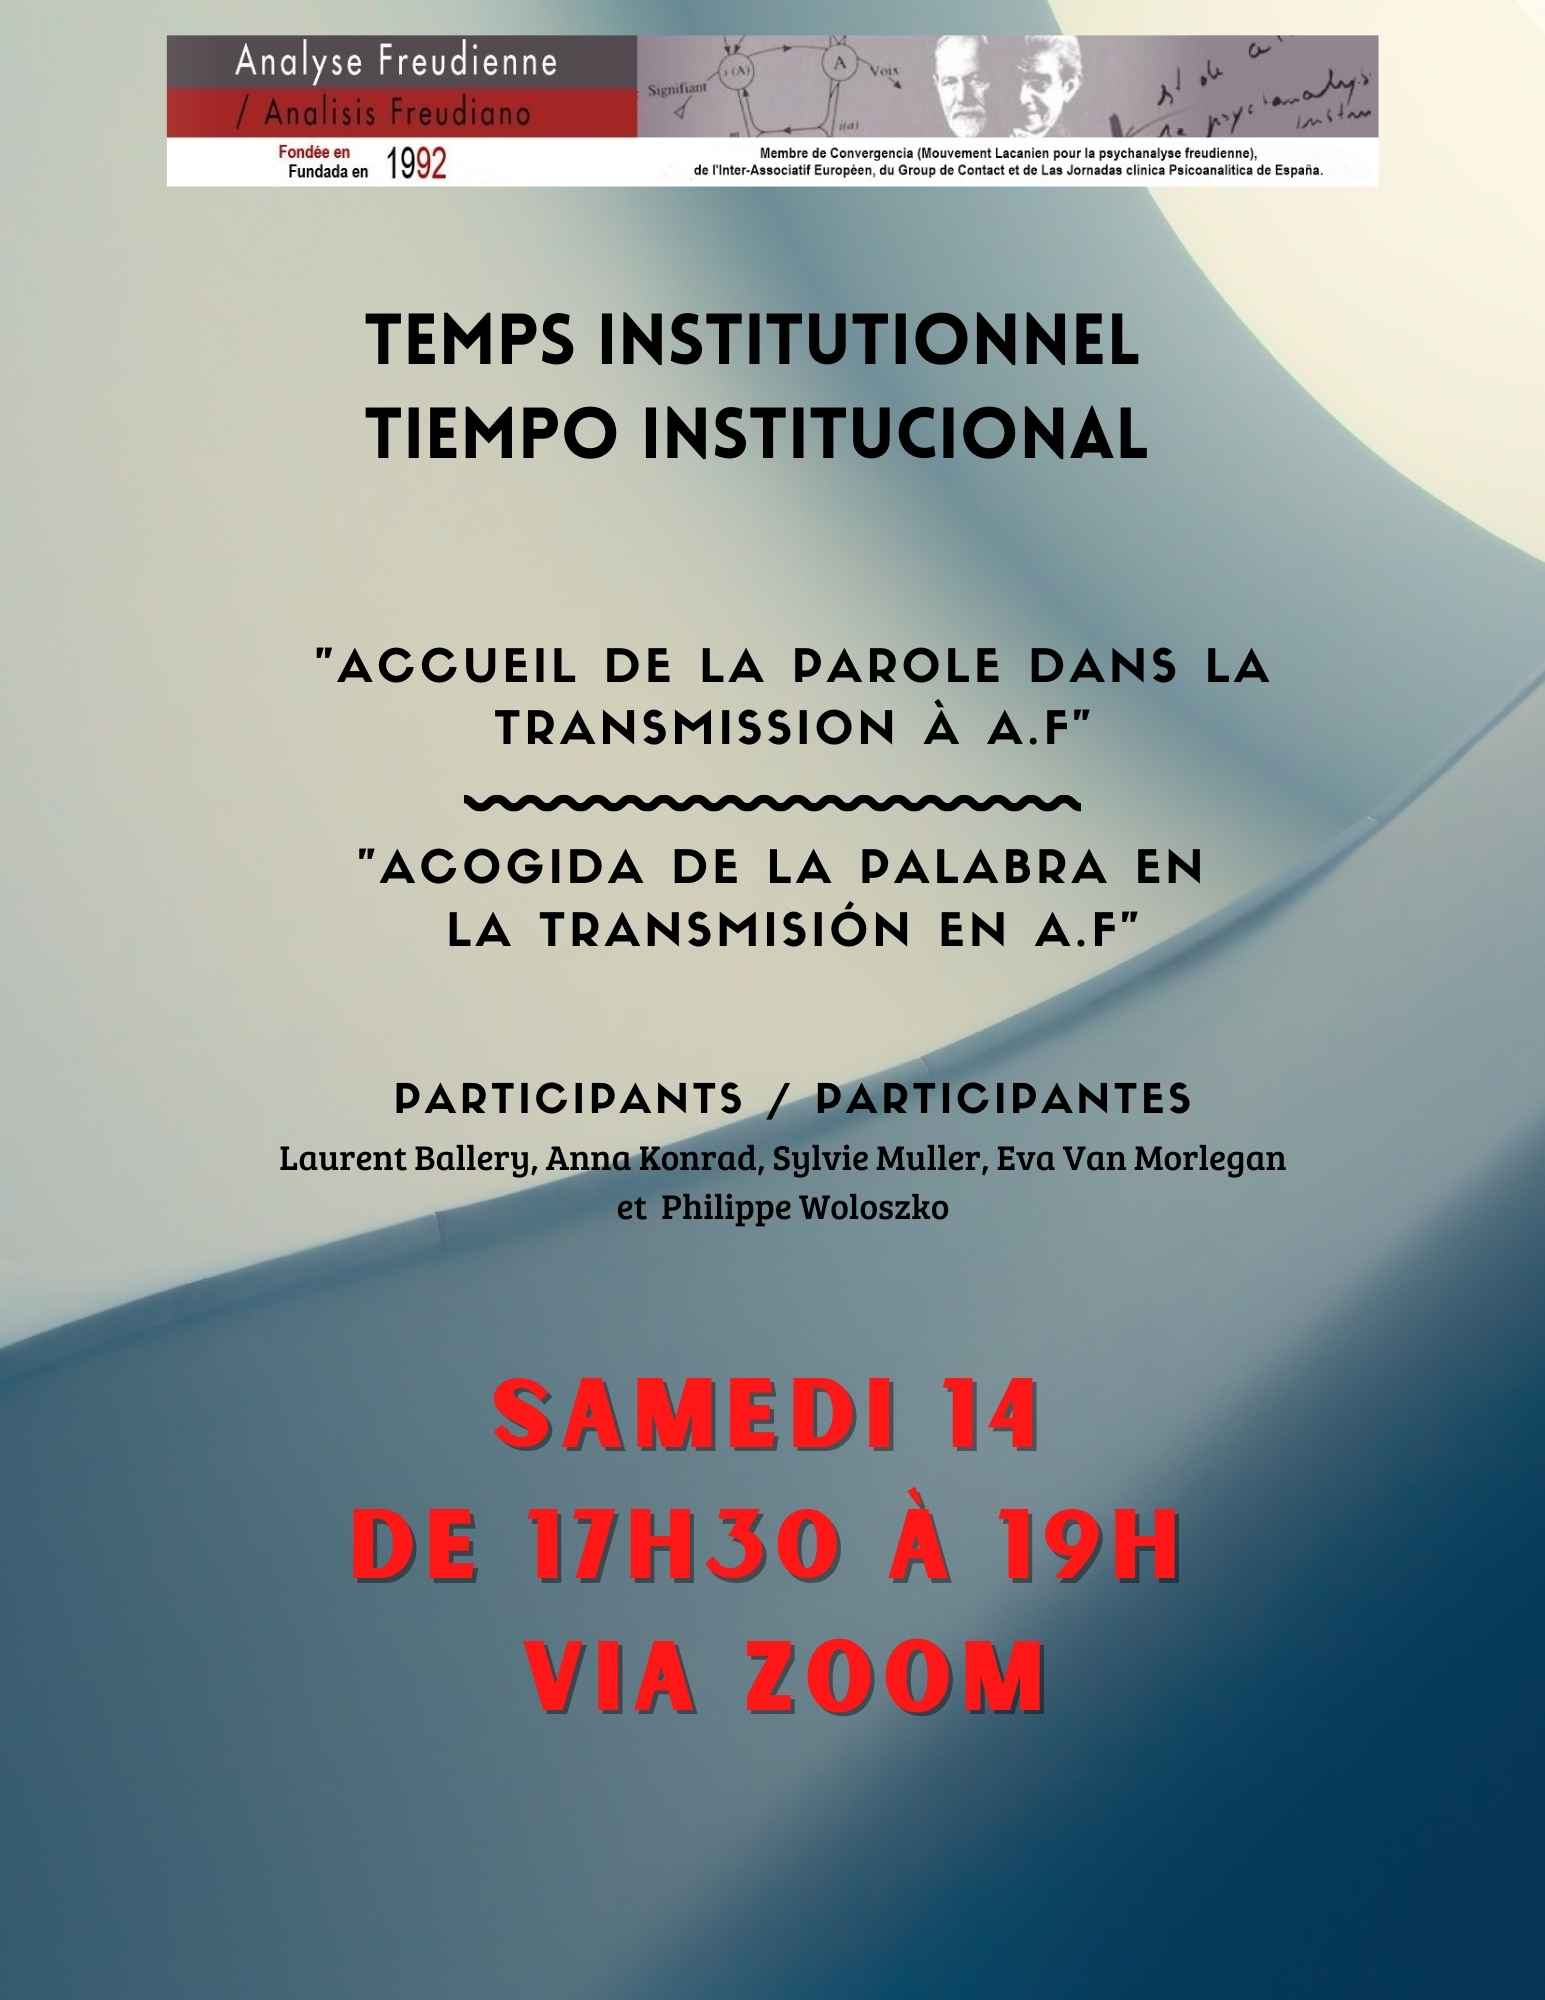 Temps institutionnel -14 janvier 2023 – 17h 30